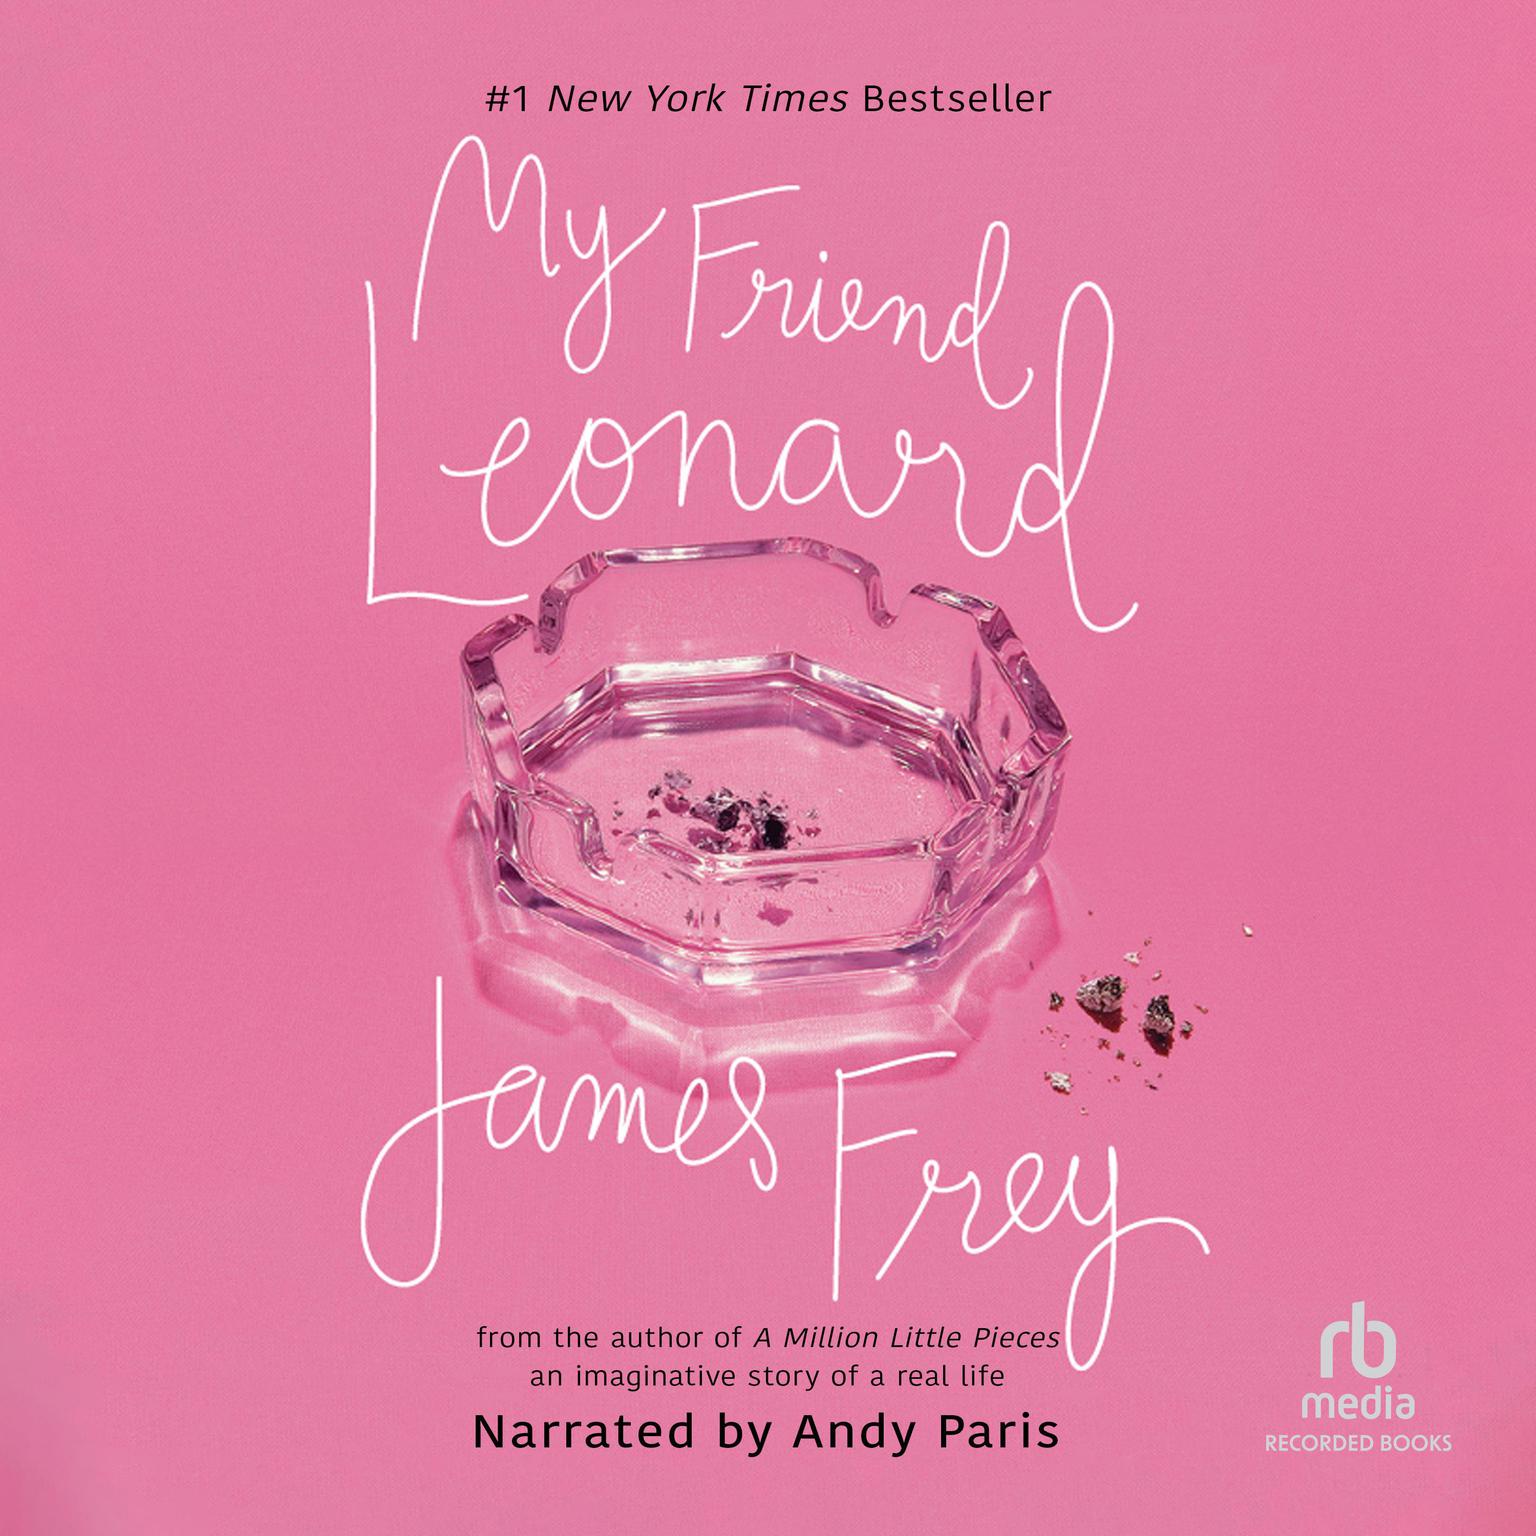 My Friend Leonard Audiobook, by James Frey